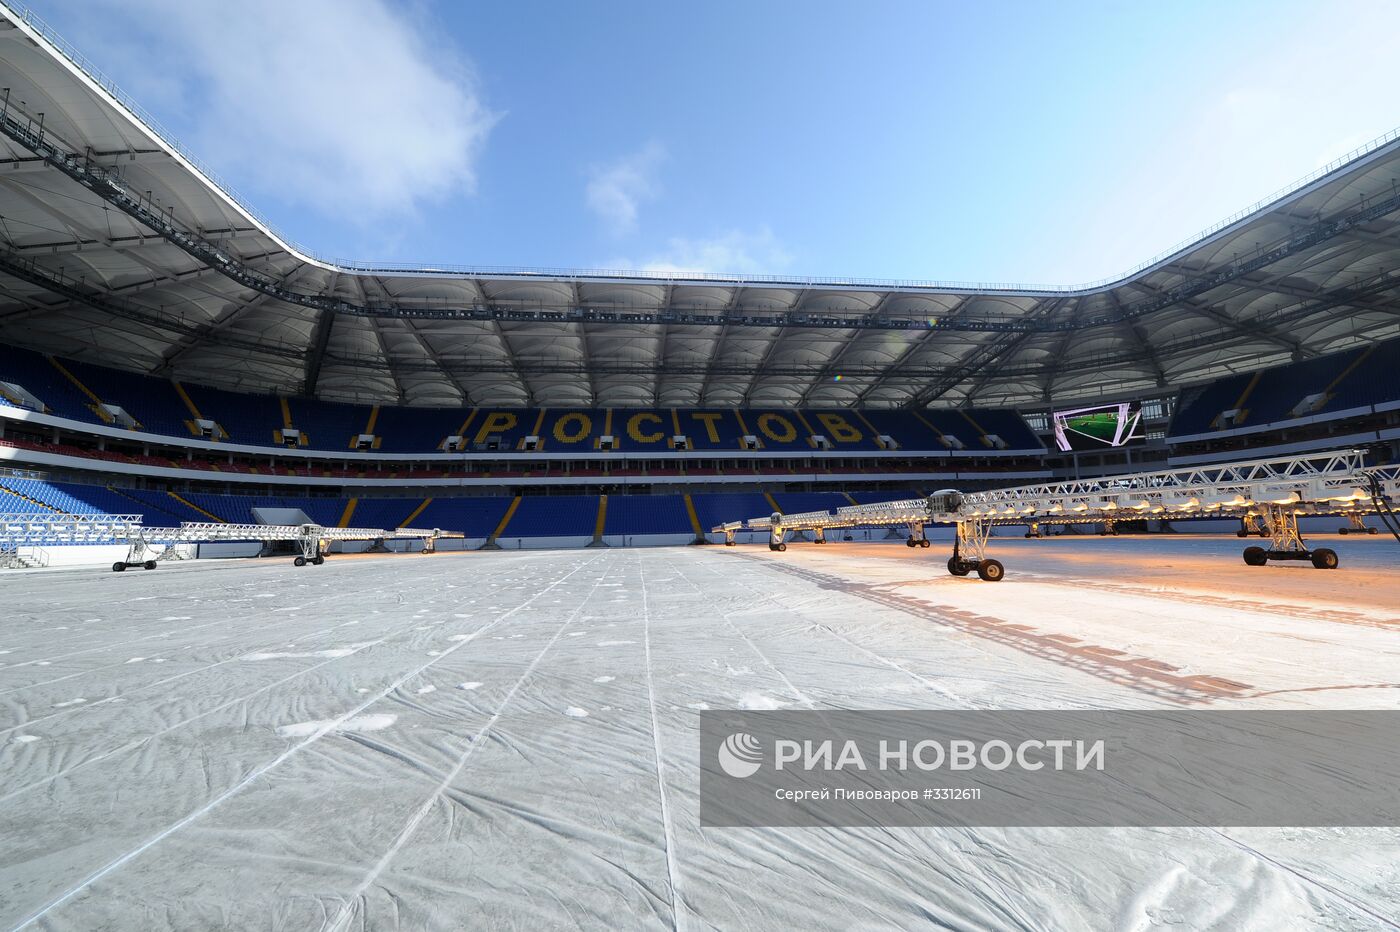 Визит комиссии ФИФА на стадион "Ростов Арена"